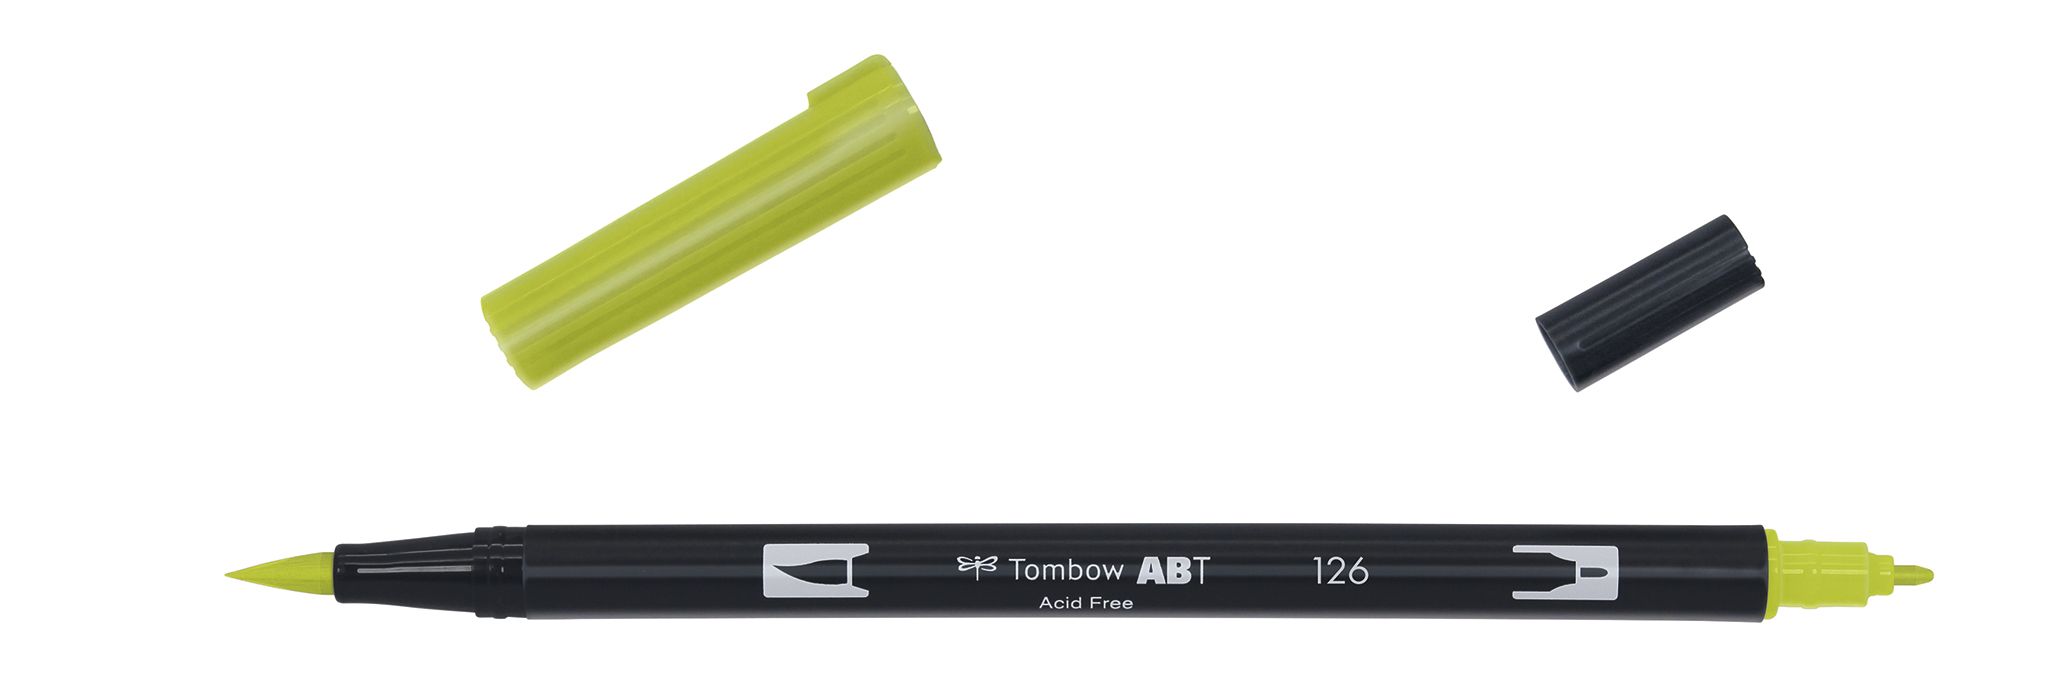 Tombow Art Brush Pen, light olive